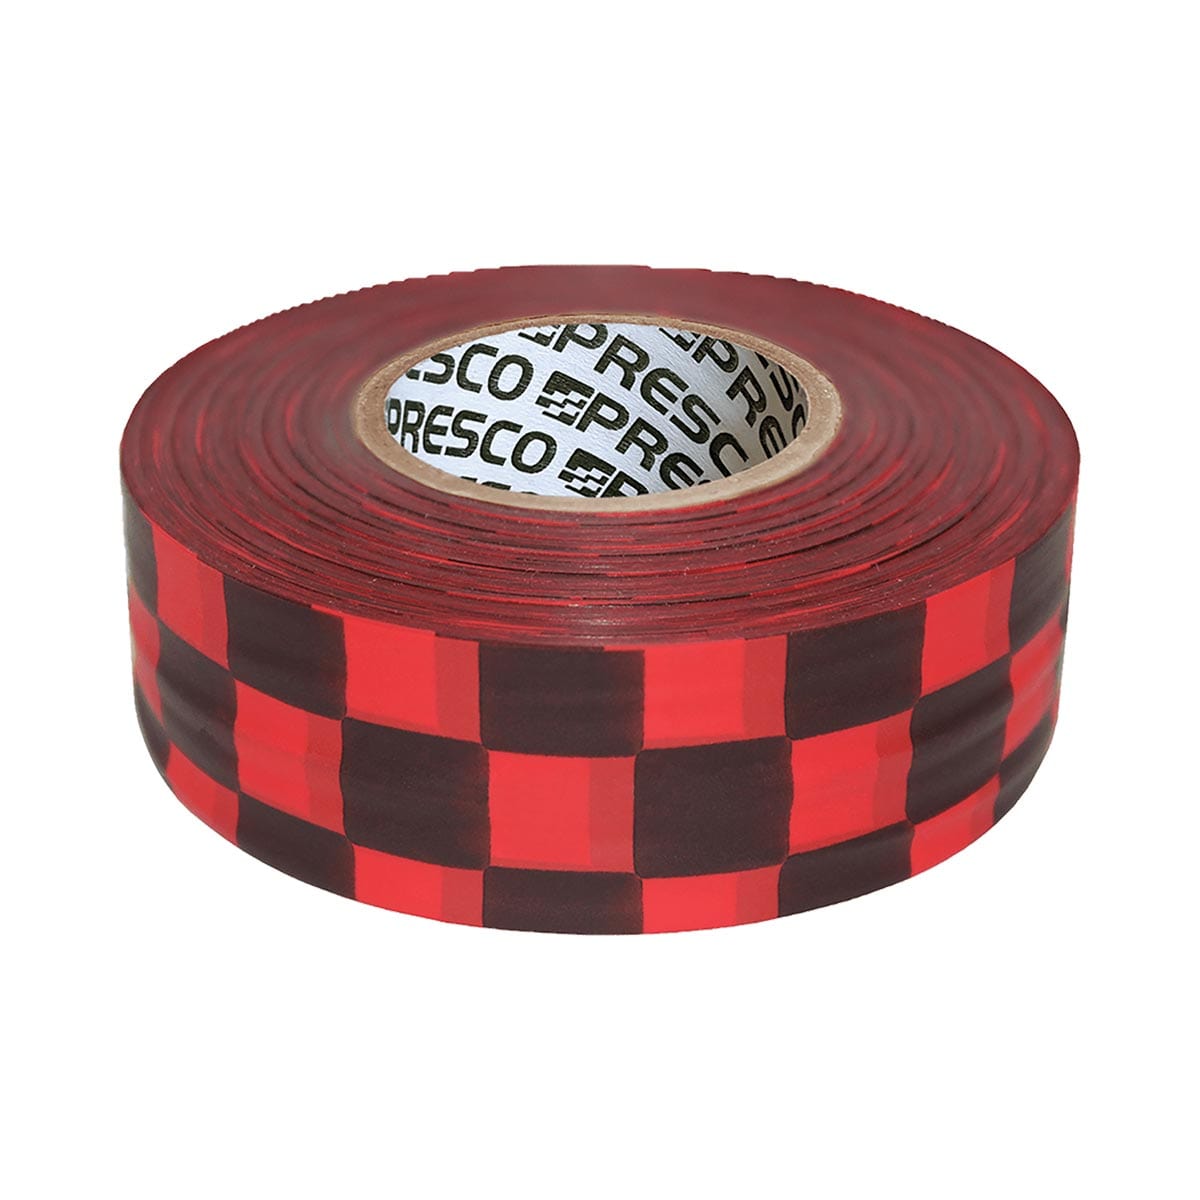 Presco Checkered Flagging Tape